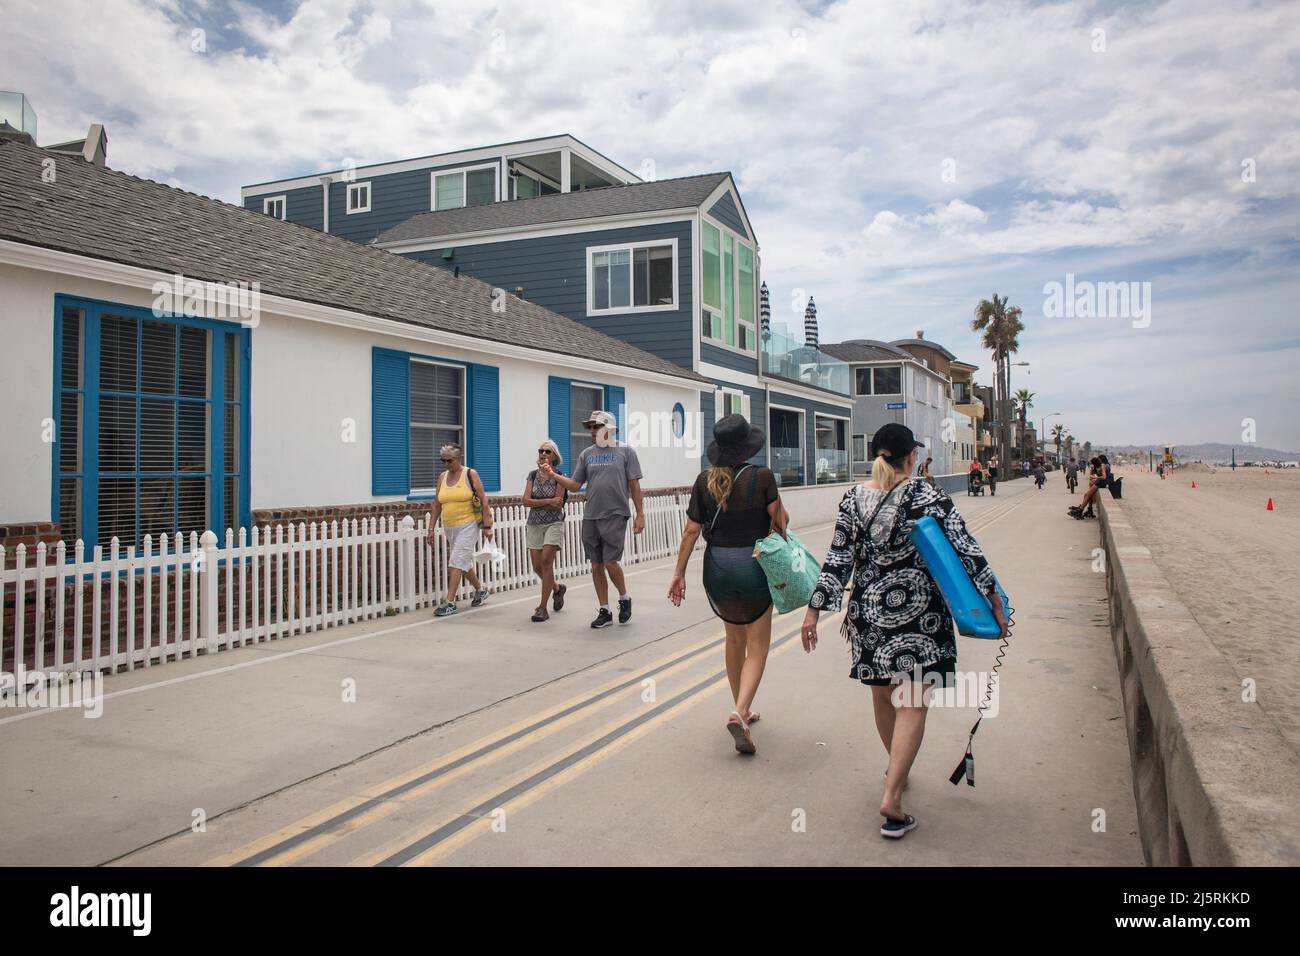 Quelques touristes se promenant sur l'océan promenade en face de quelques maisons de vacances d'été, Mission Bay, San Diego Banque D'Images